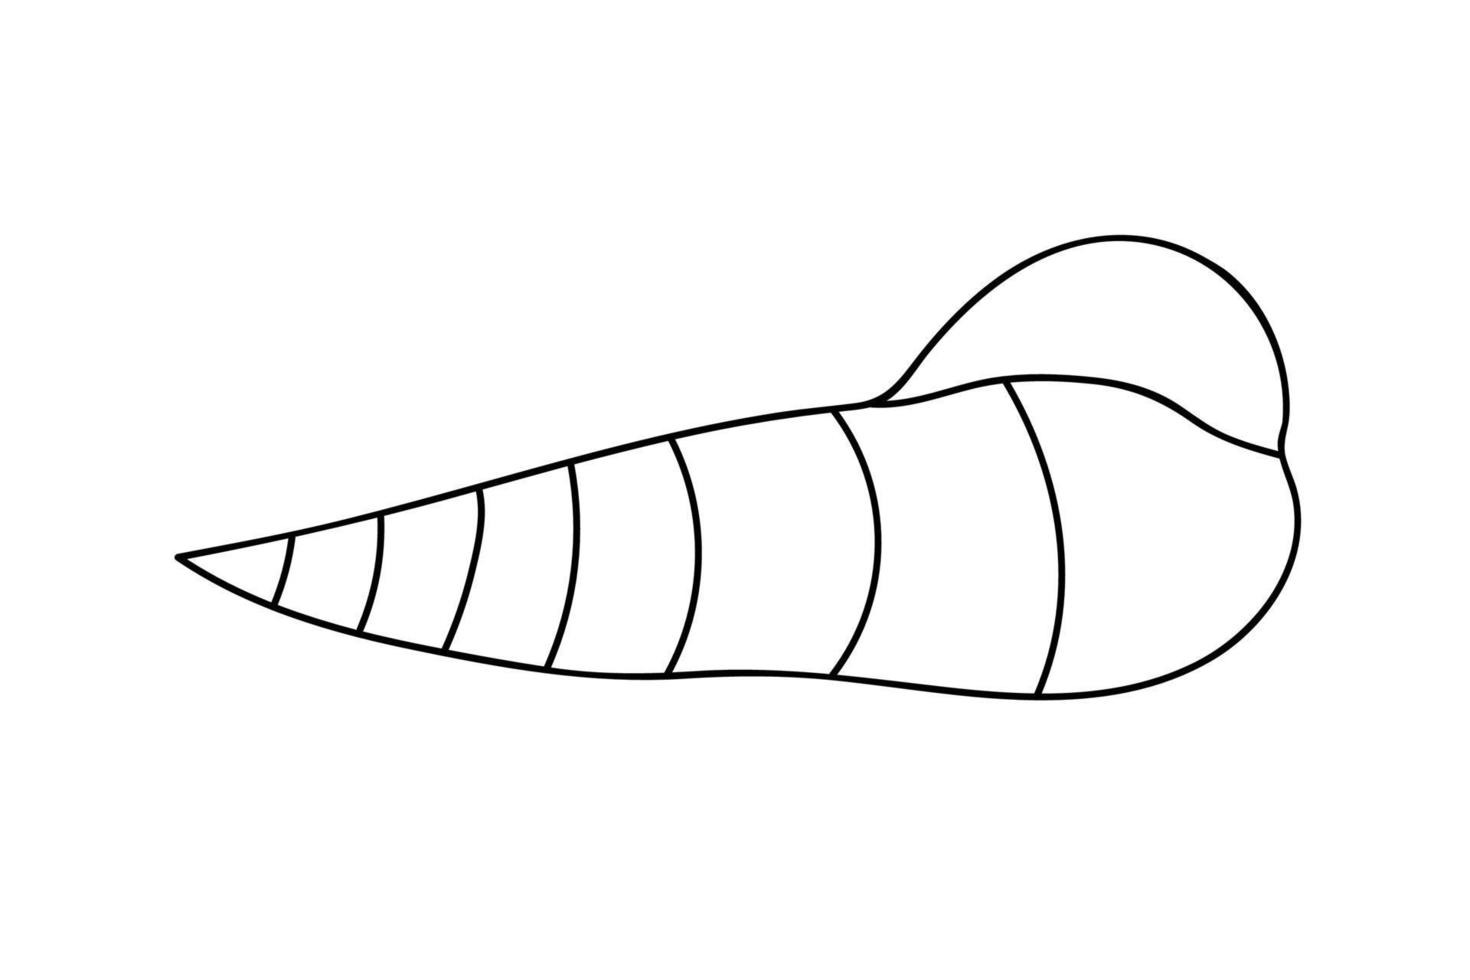 Vector sea shell illustration. Vector stock illustration.